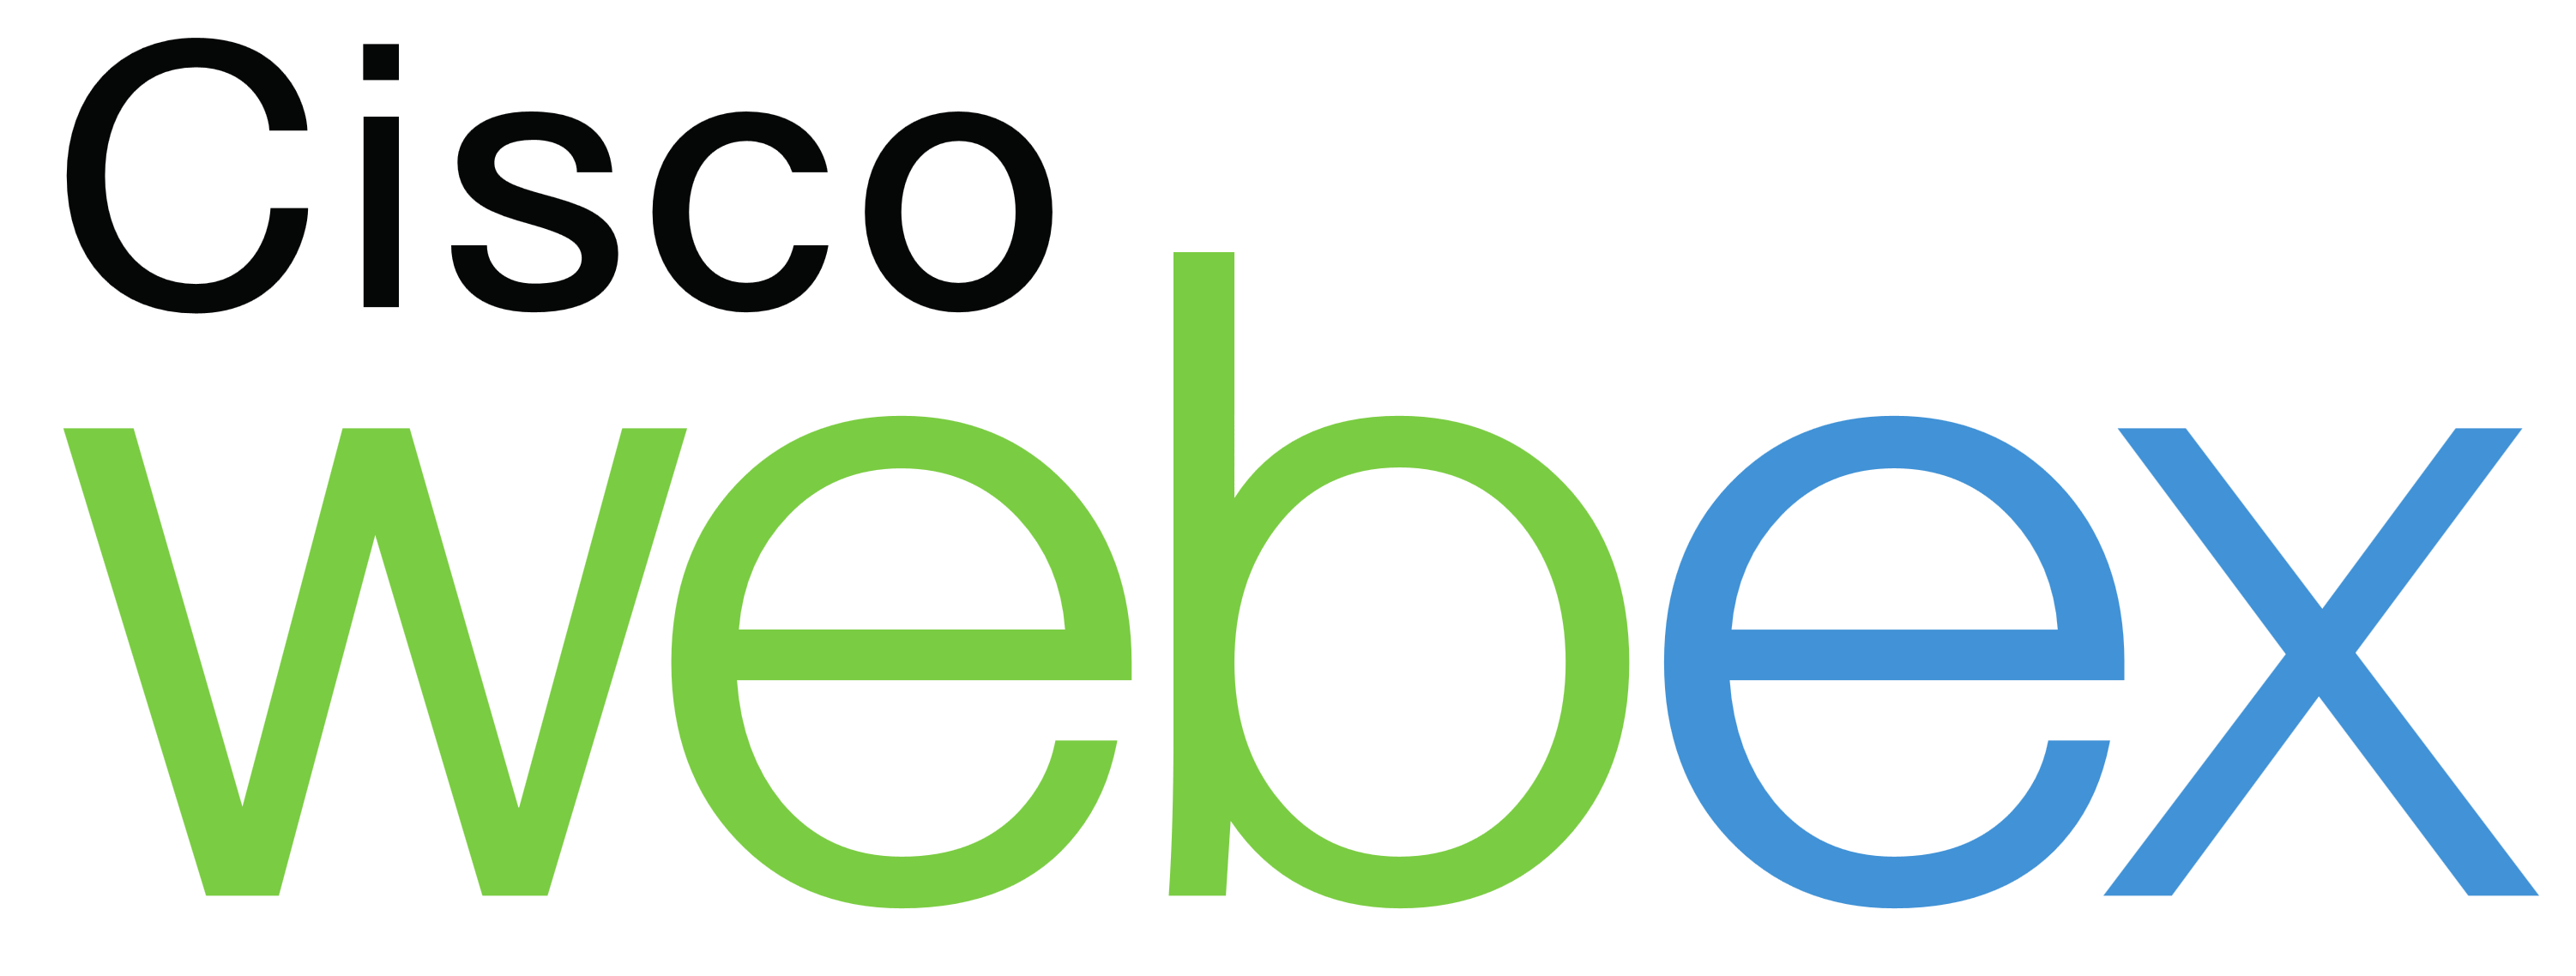 Cisco Logo Transparent Image